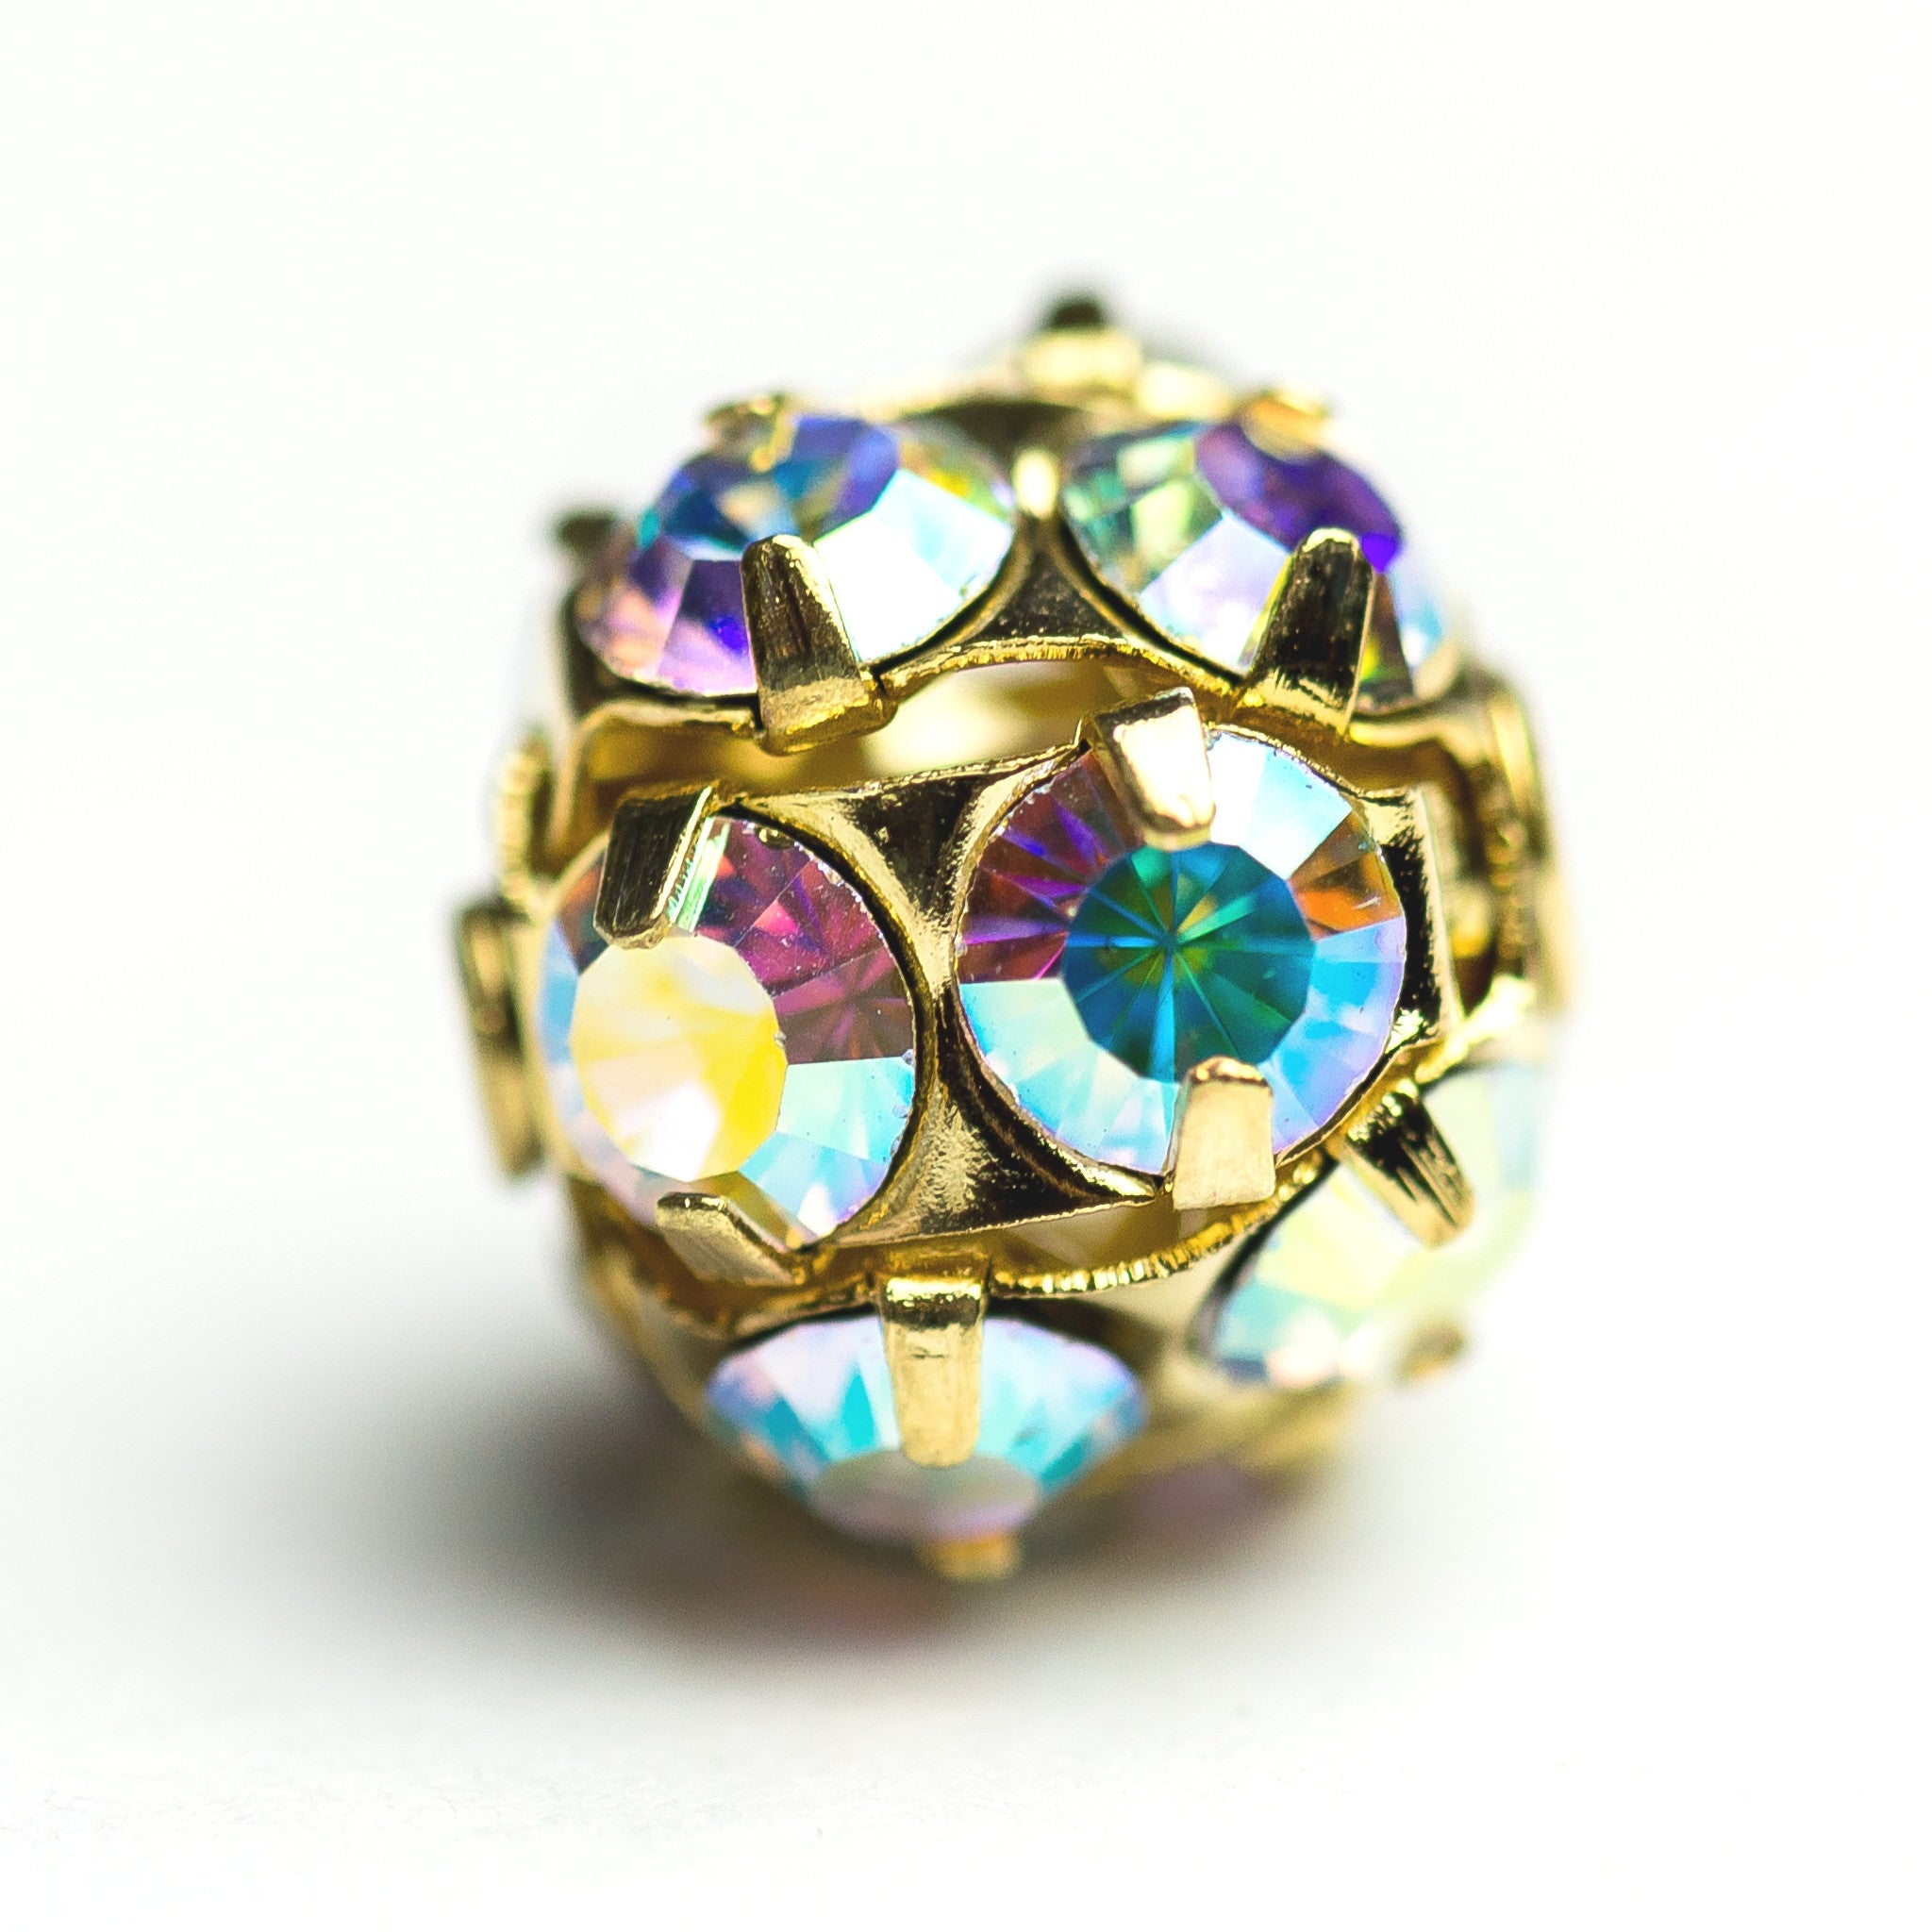 12MM Rhinestone Ball Crystal Ab/Gold (2 pieces)